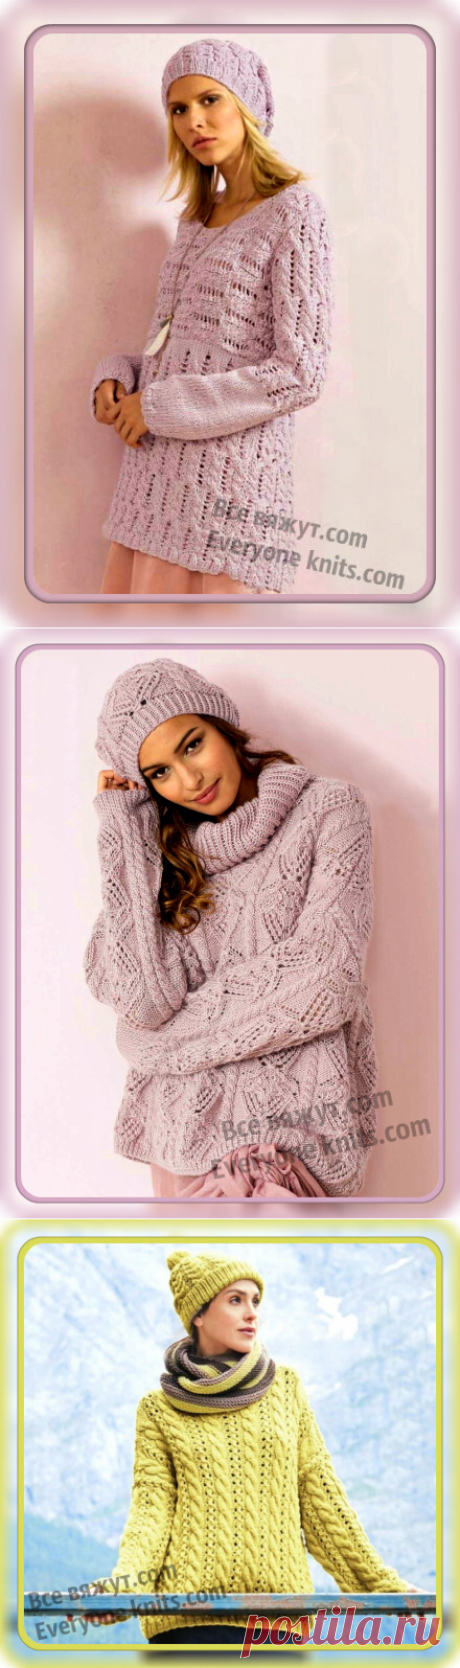 Комплекты из пуловеров с шапками и снудами  спицами. Описание вязания, схемы узоров. | Все вяжут.сом/Everyone knits.com |